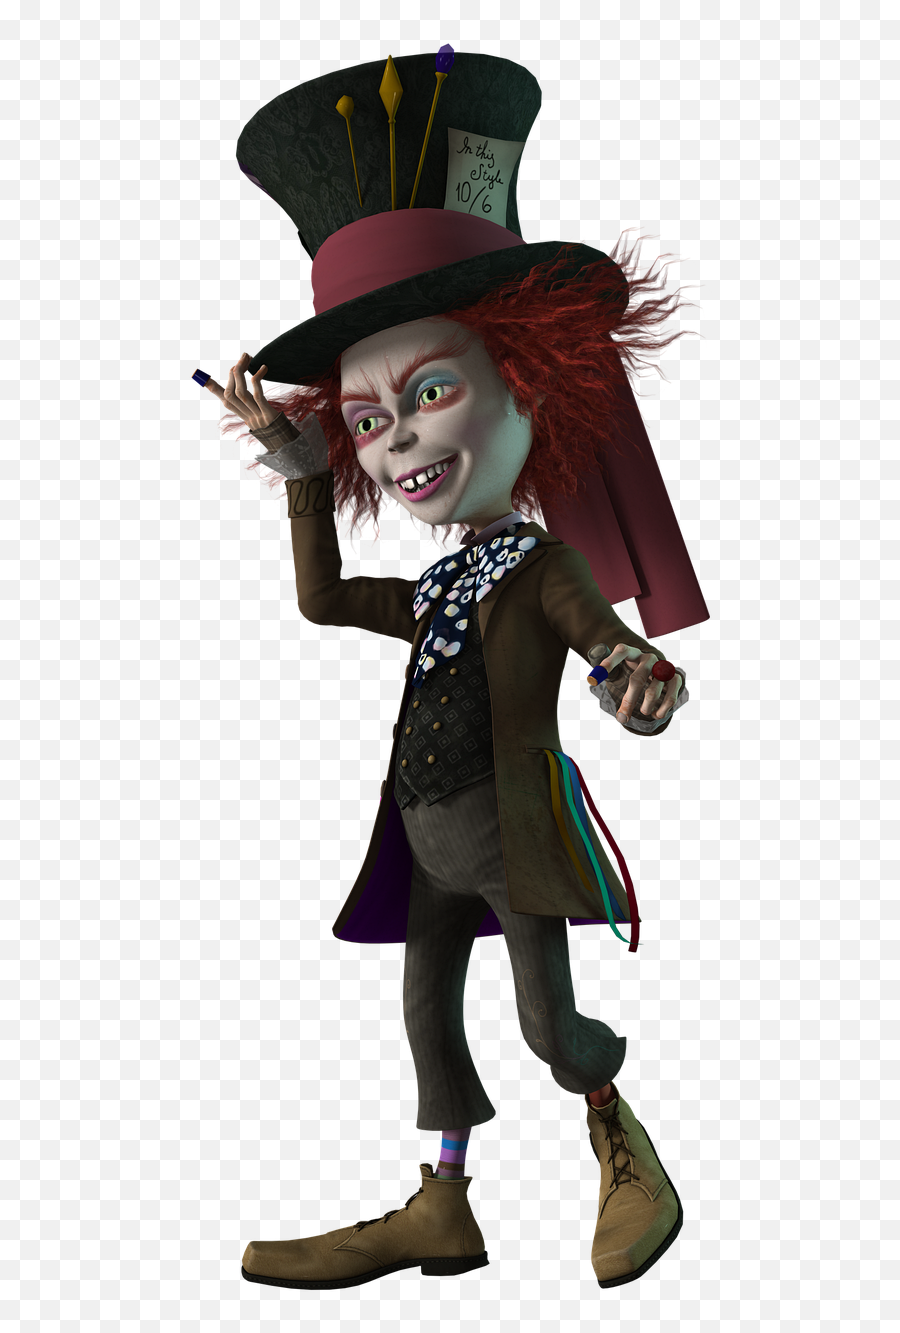 Mad Hatter Wonderland - Free Image On Pixabay Mad Hatter Alice In Wonderland Png,Mad Hatter Hat Png